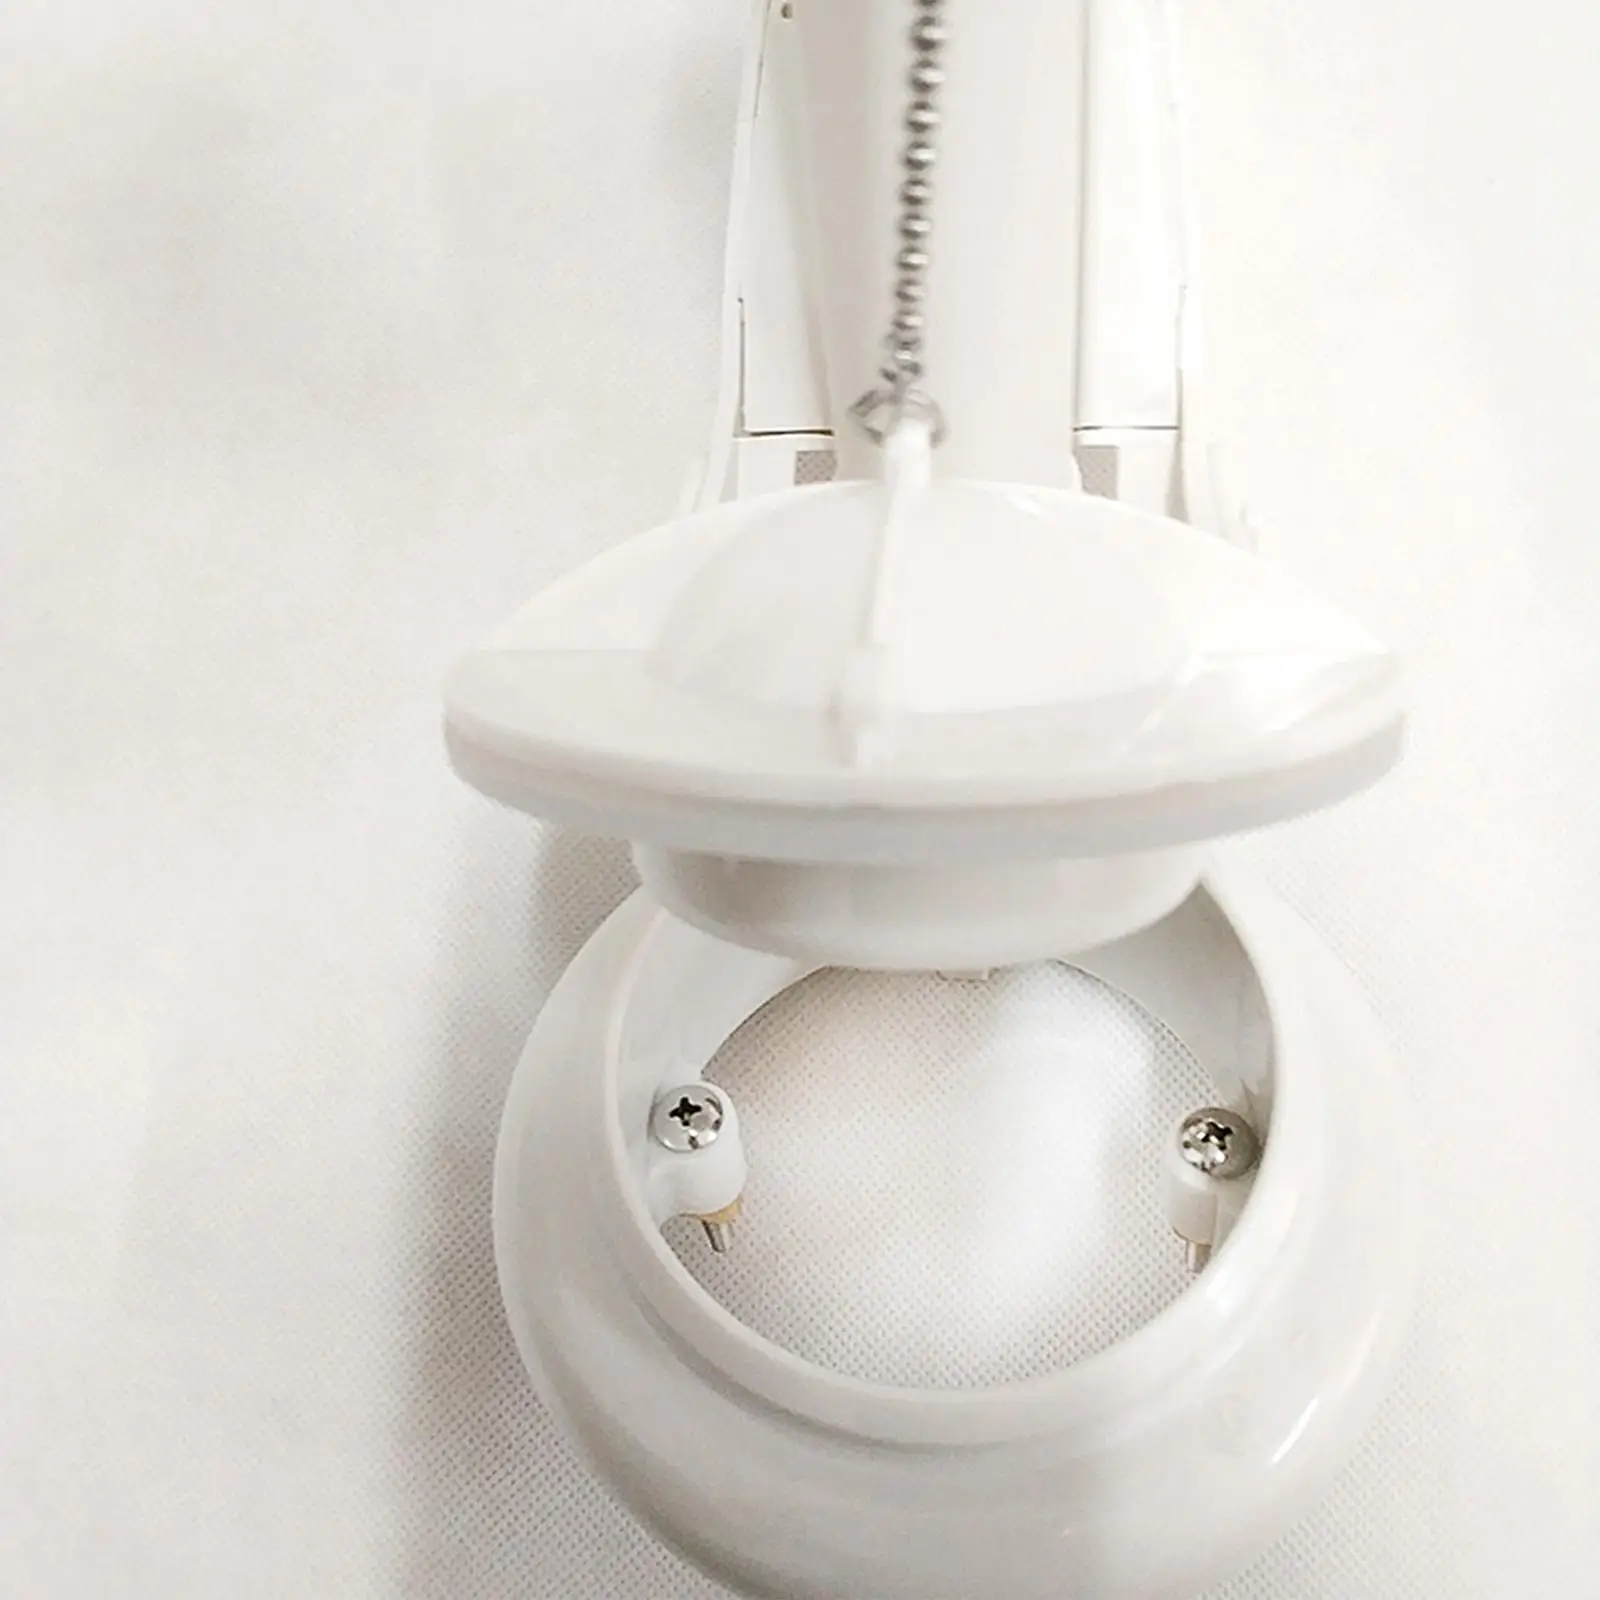 Toilet Flush Valves Flushing Valve Adjustable Height Household Universal Replace